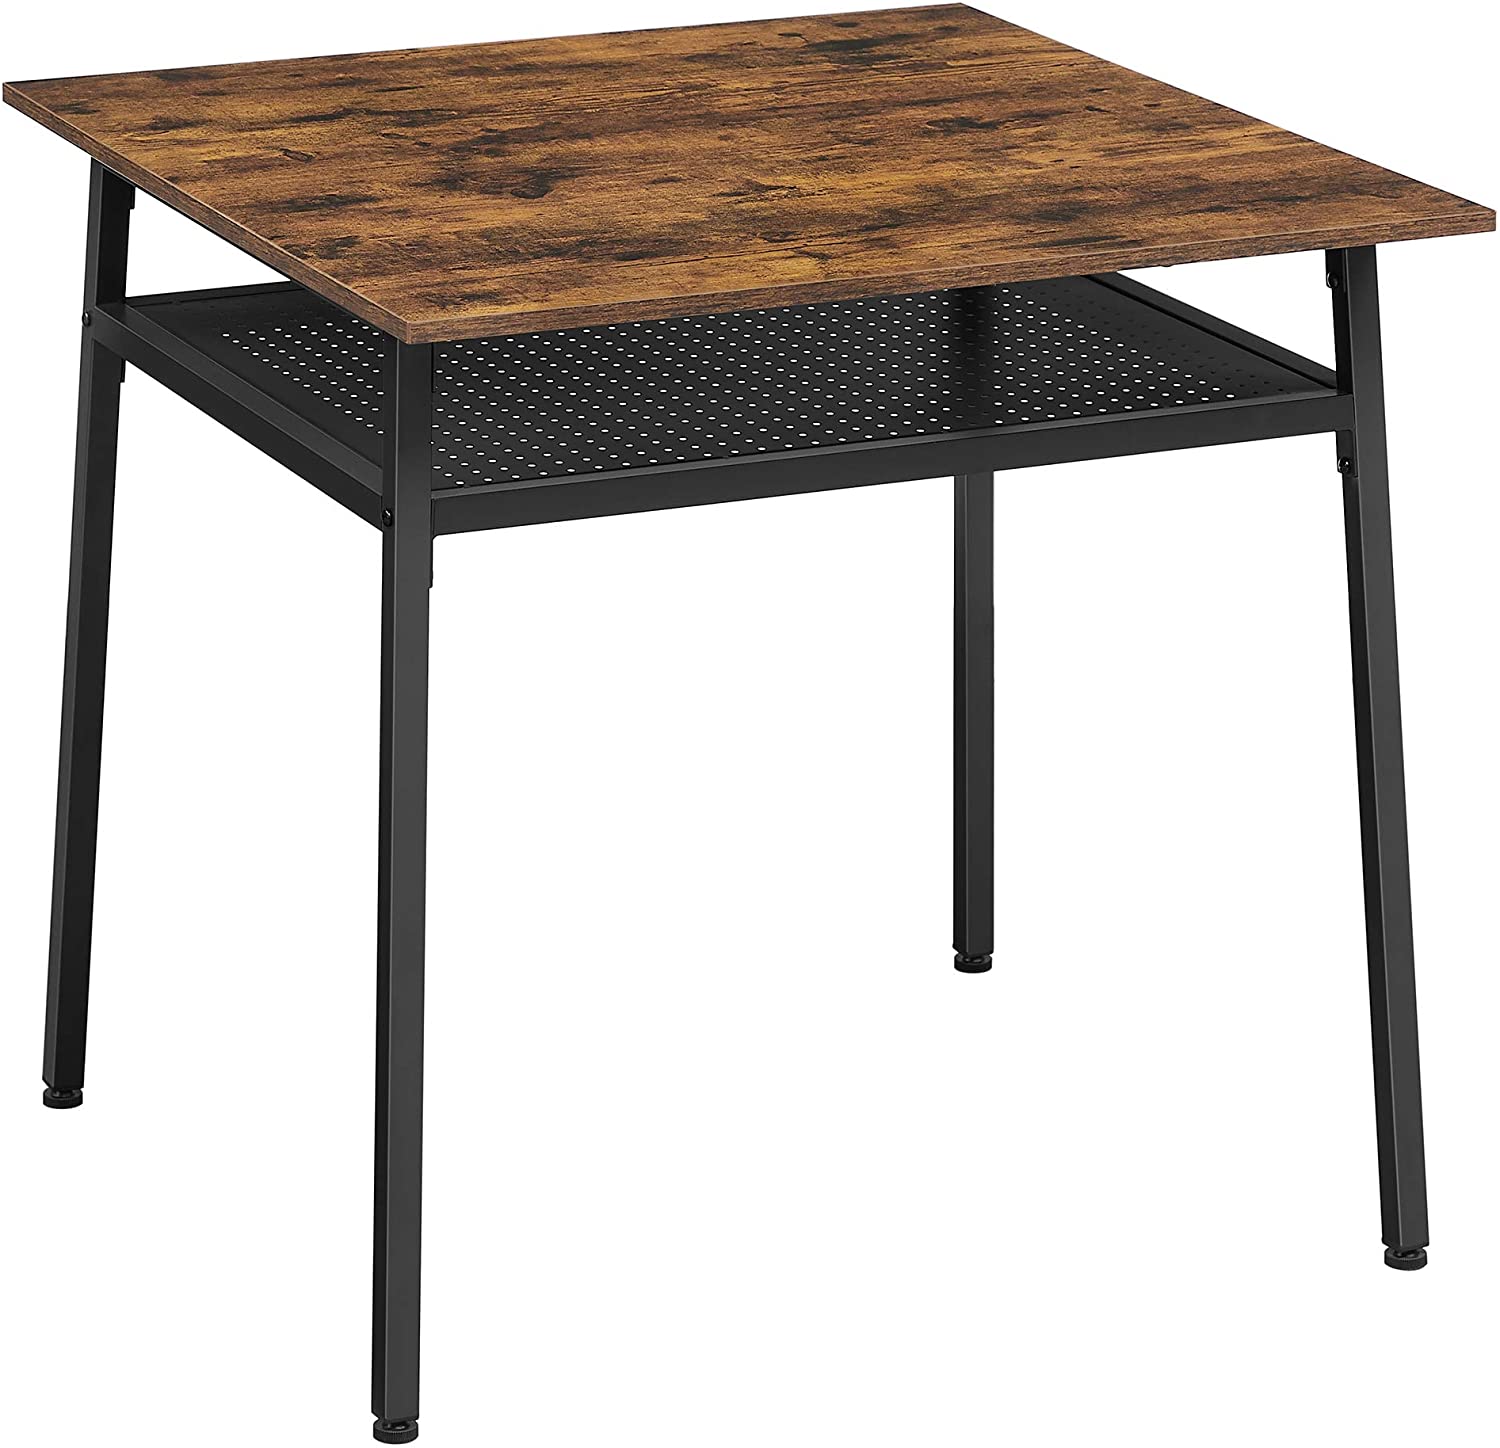 Eettafel voor 2 personen 80 x 80 x 78 cm vierkant Industriële stijl / werktafel Bureau -